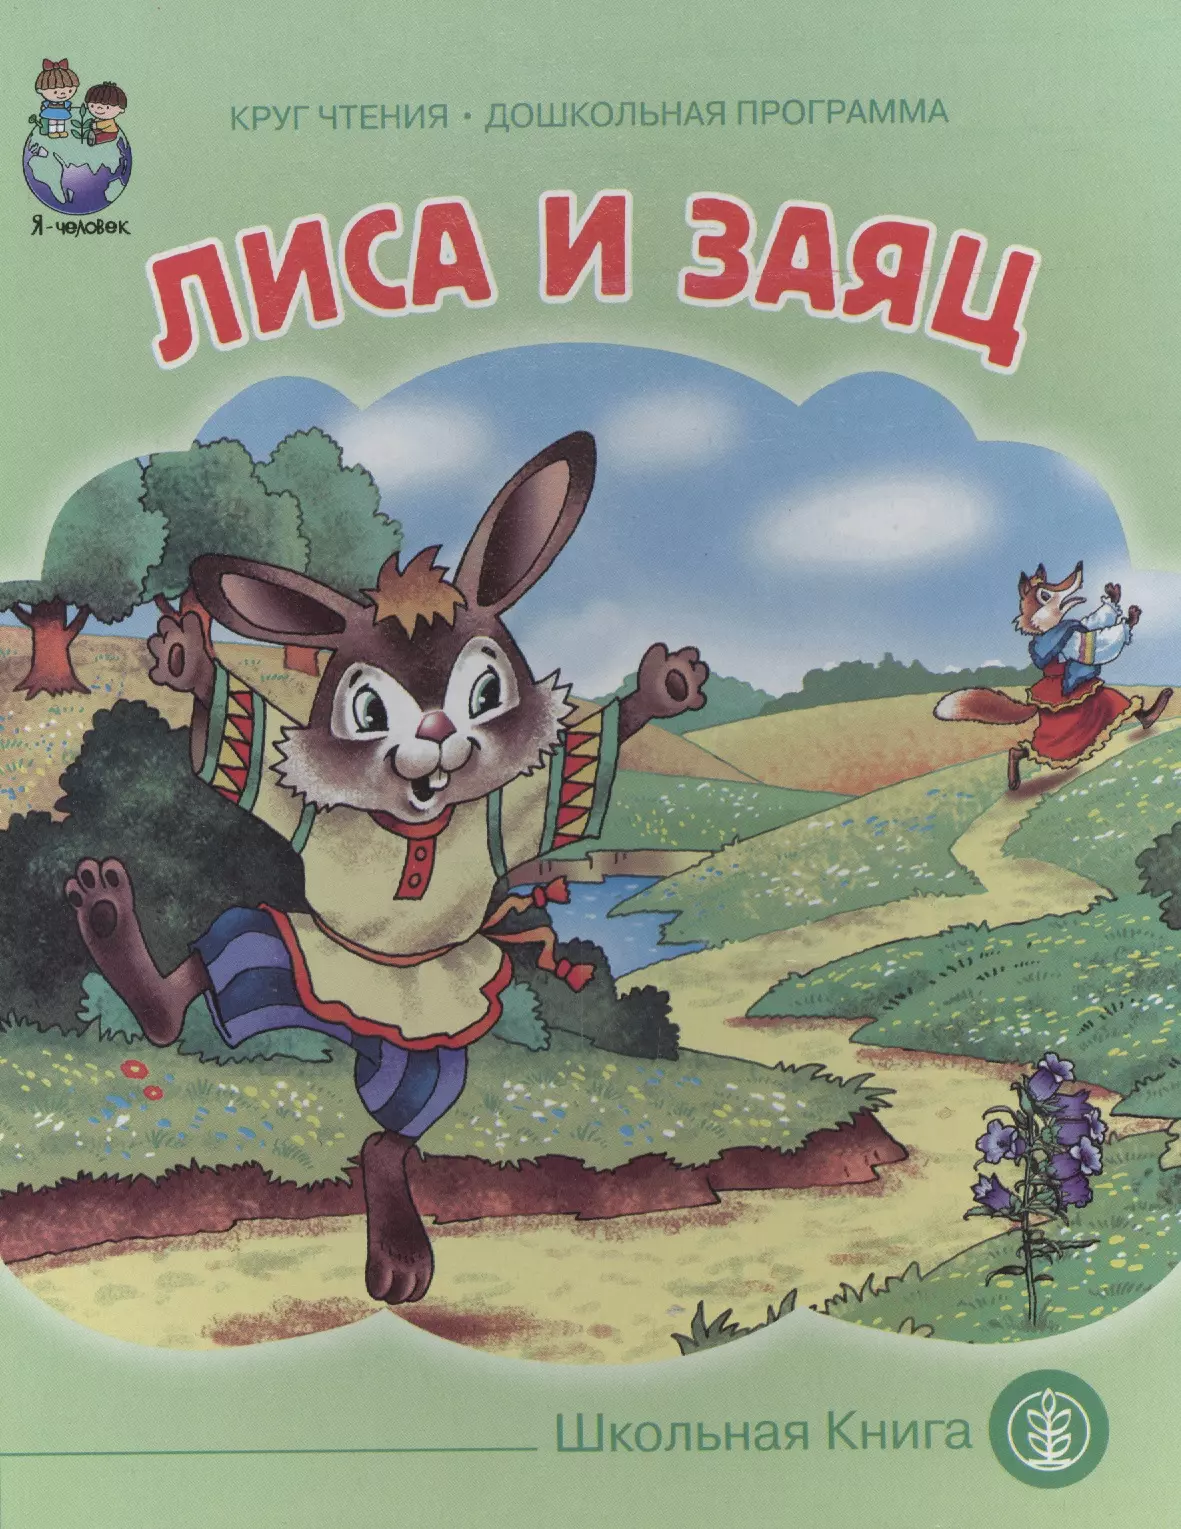 Книга про зайца. Лиса и заяц книга. Лиса и заяц народное творчество книга. Сказка лиса и заяц. Лиса и заяц сказка книга.